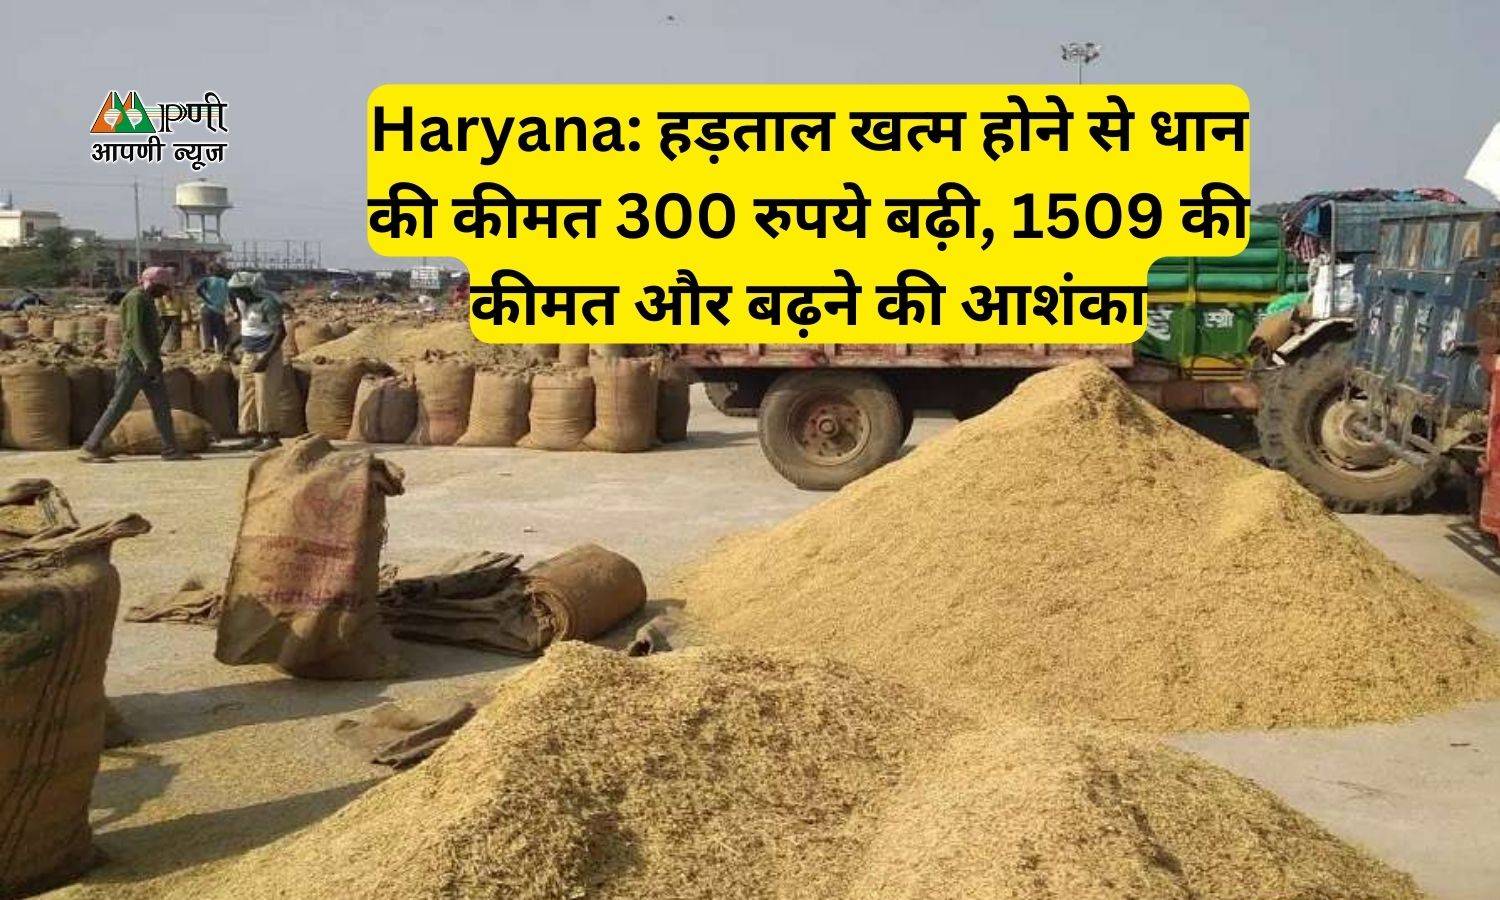 Haryana: हड़ताल खत्म होने से धान की कीमत 300 रुपये बढ़ी, 1509 की कीमत और बढ़ने की आशंका